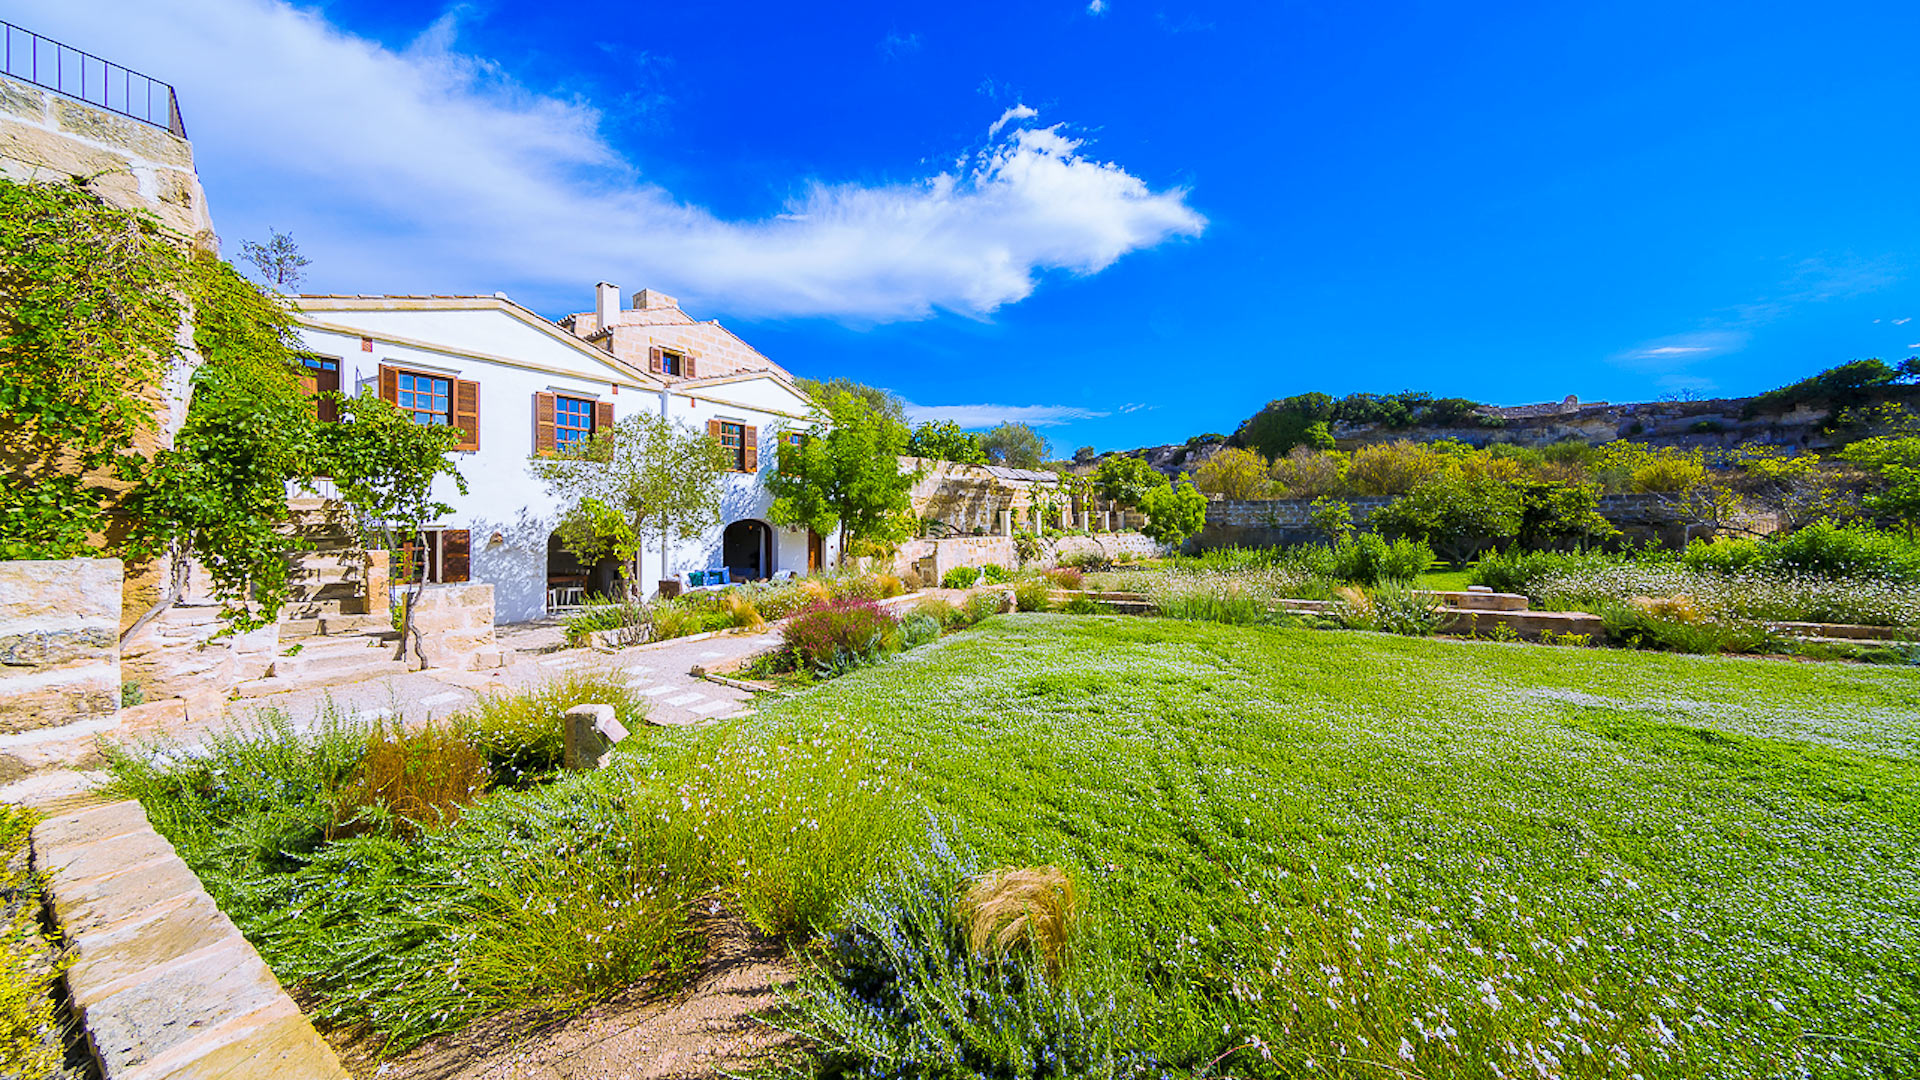 Villa Villa Aleiora, Rental in Menorca